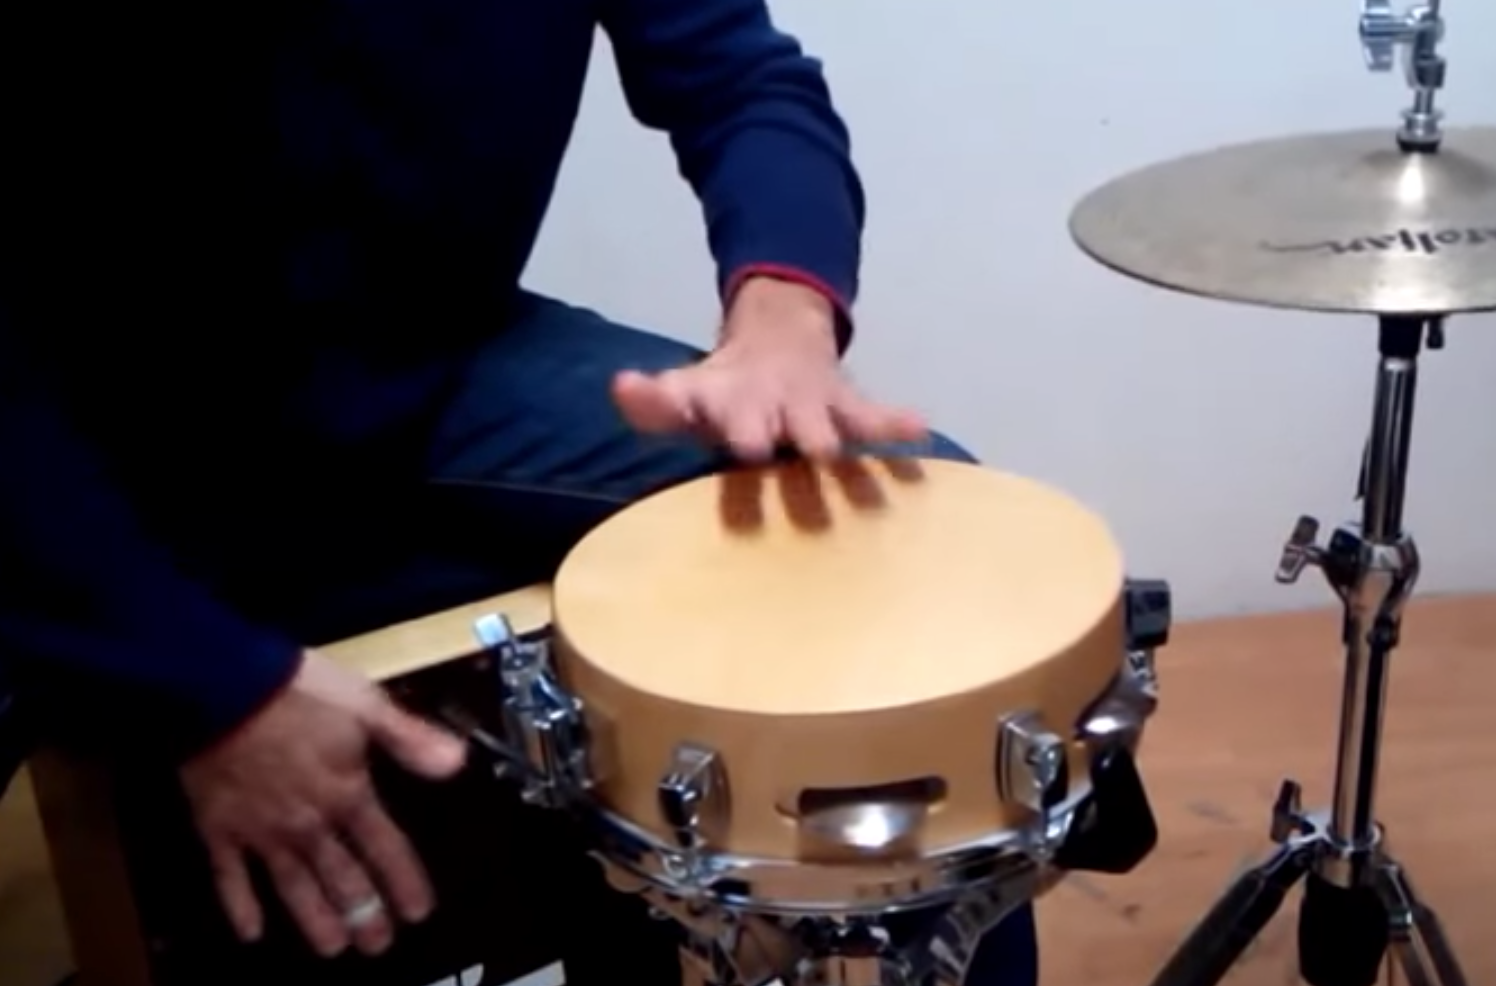 santafe drums snare